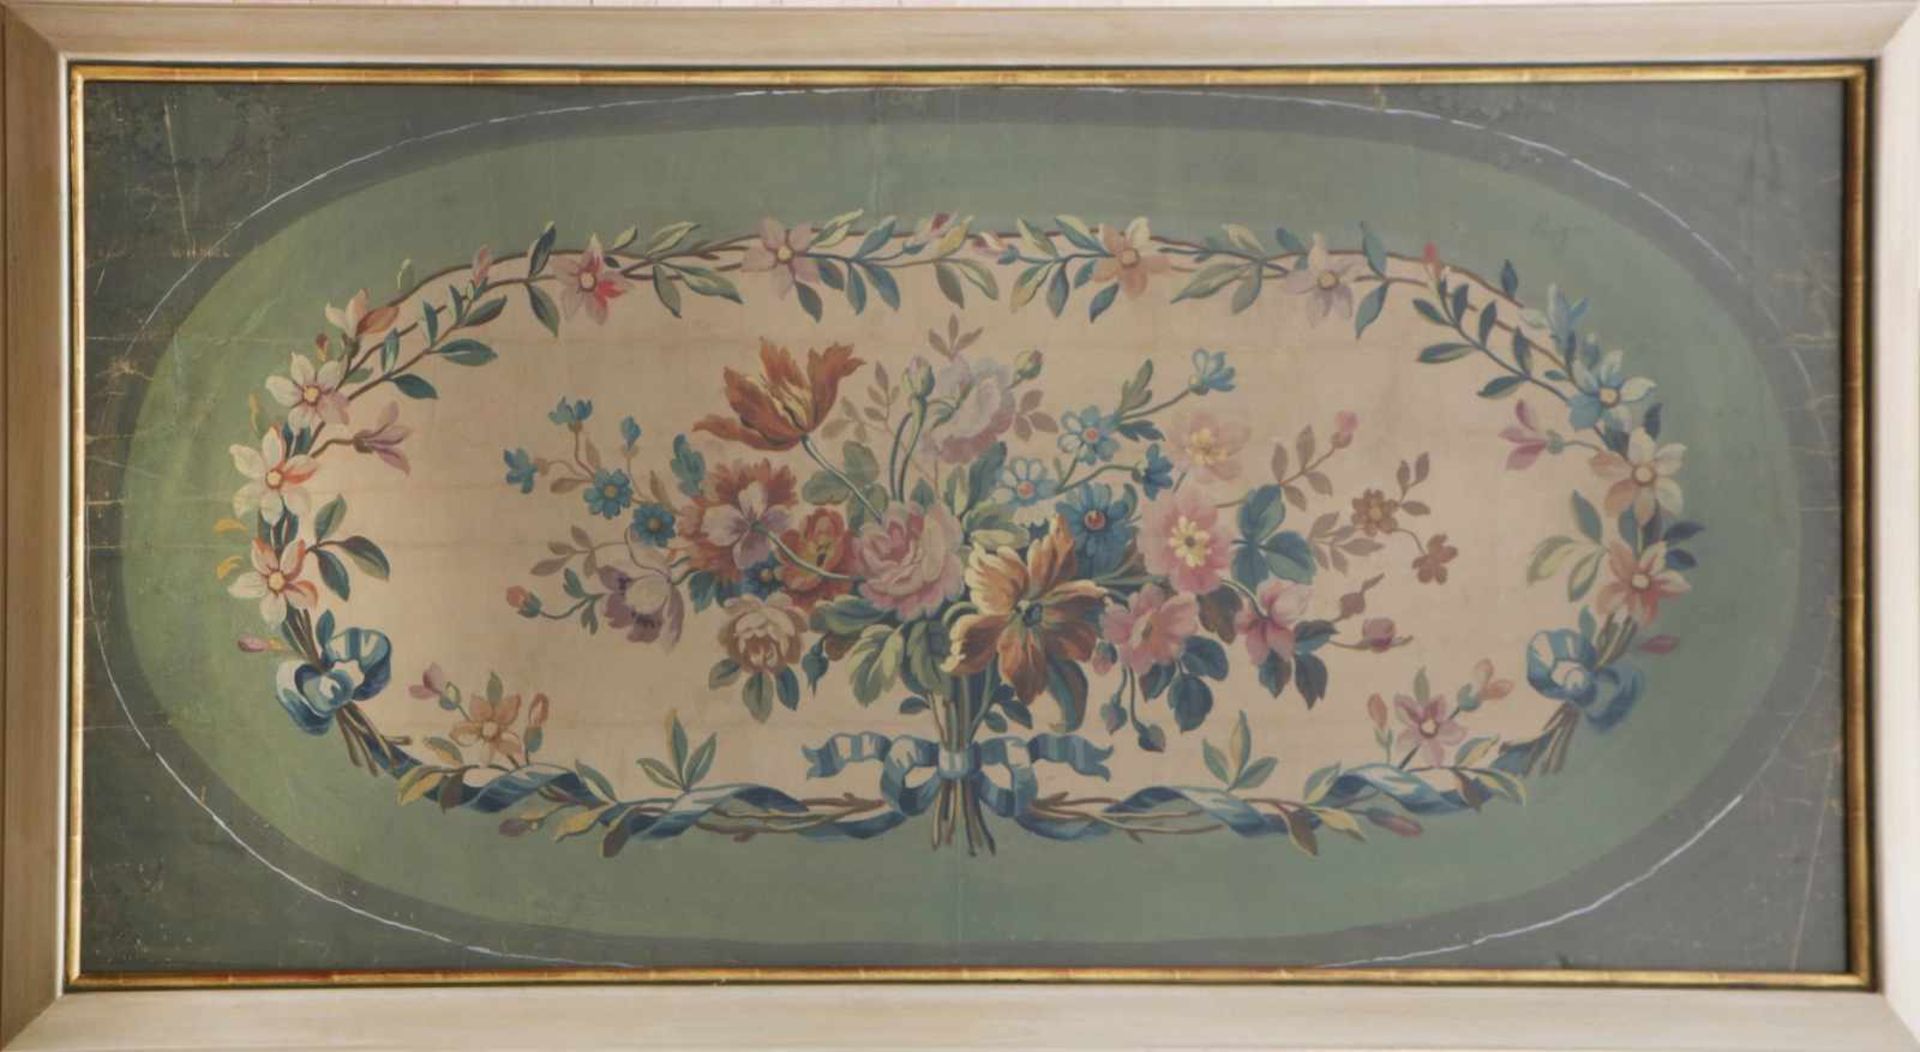 Dekorative Supraporten-MalereiTemperafarbe auf Papier, mit floralen Ornamenten, im Stile des 19.